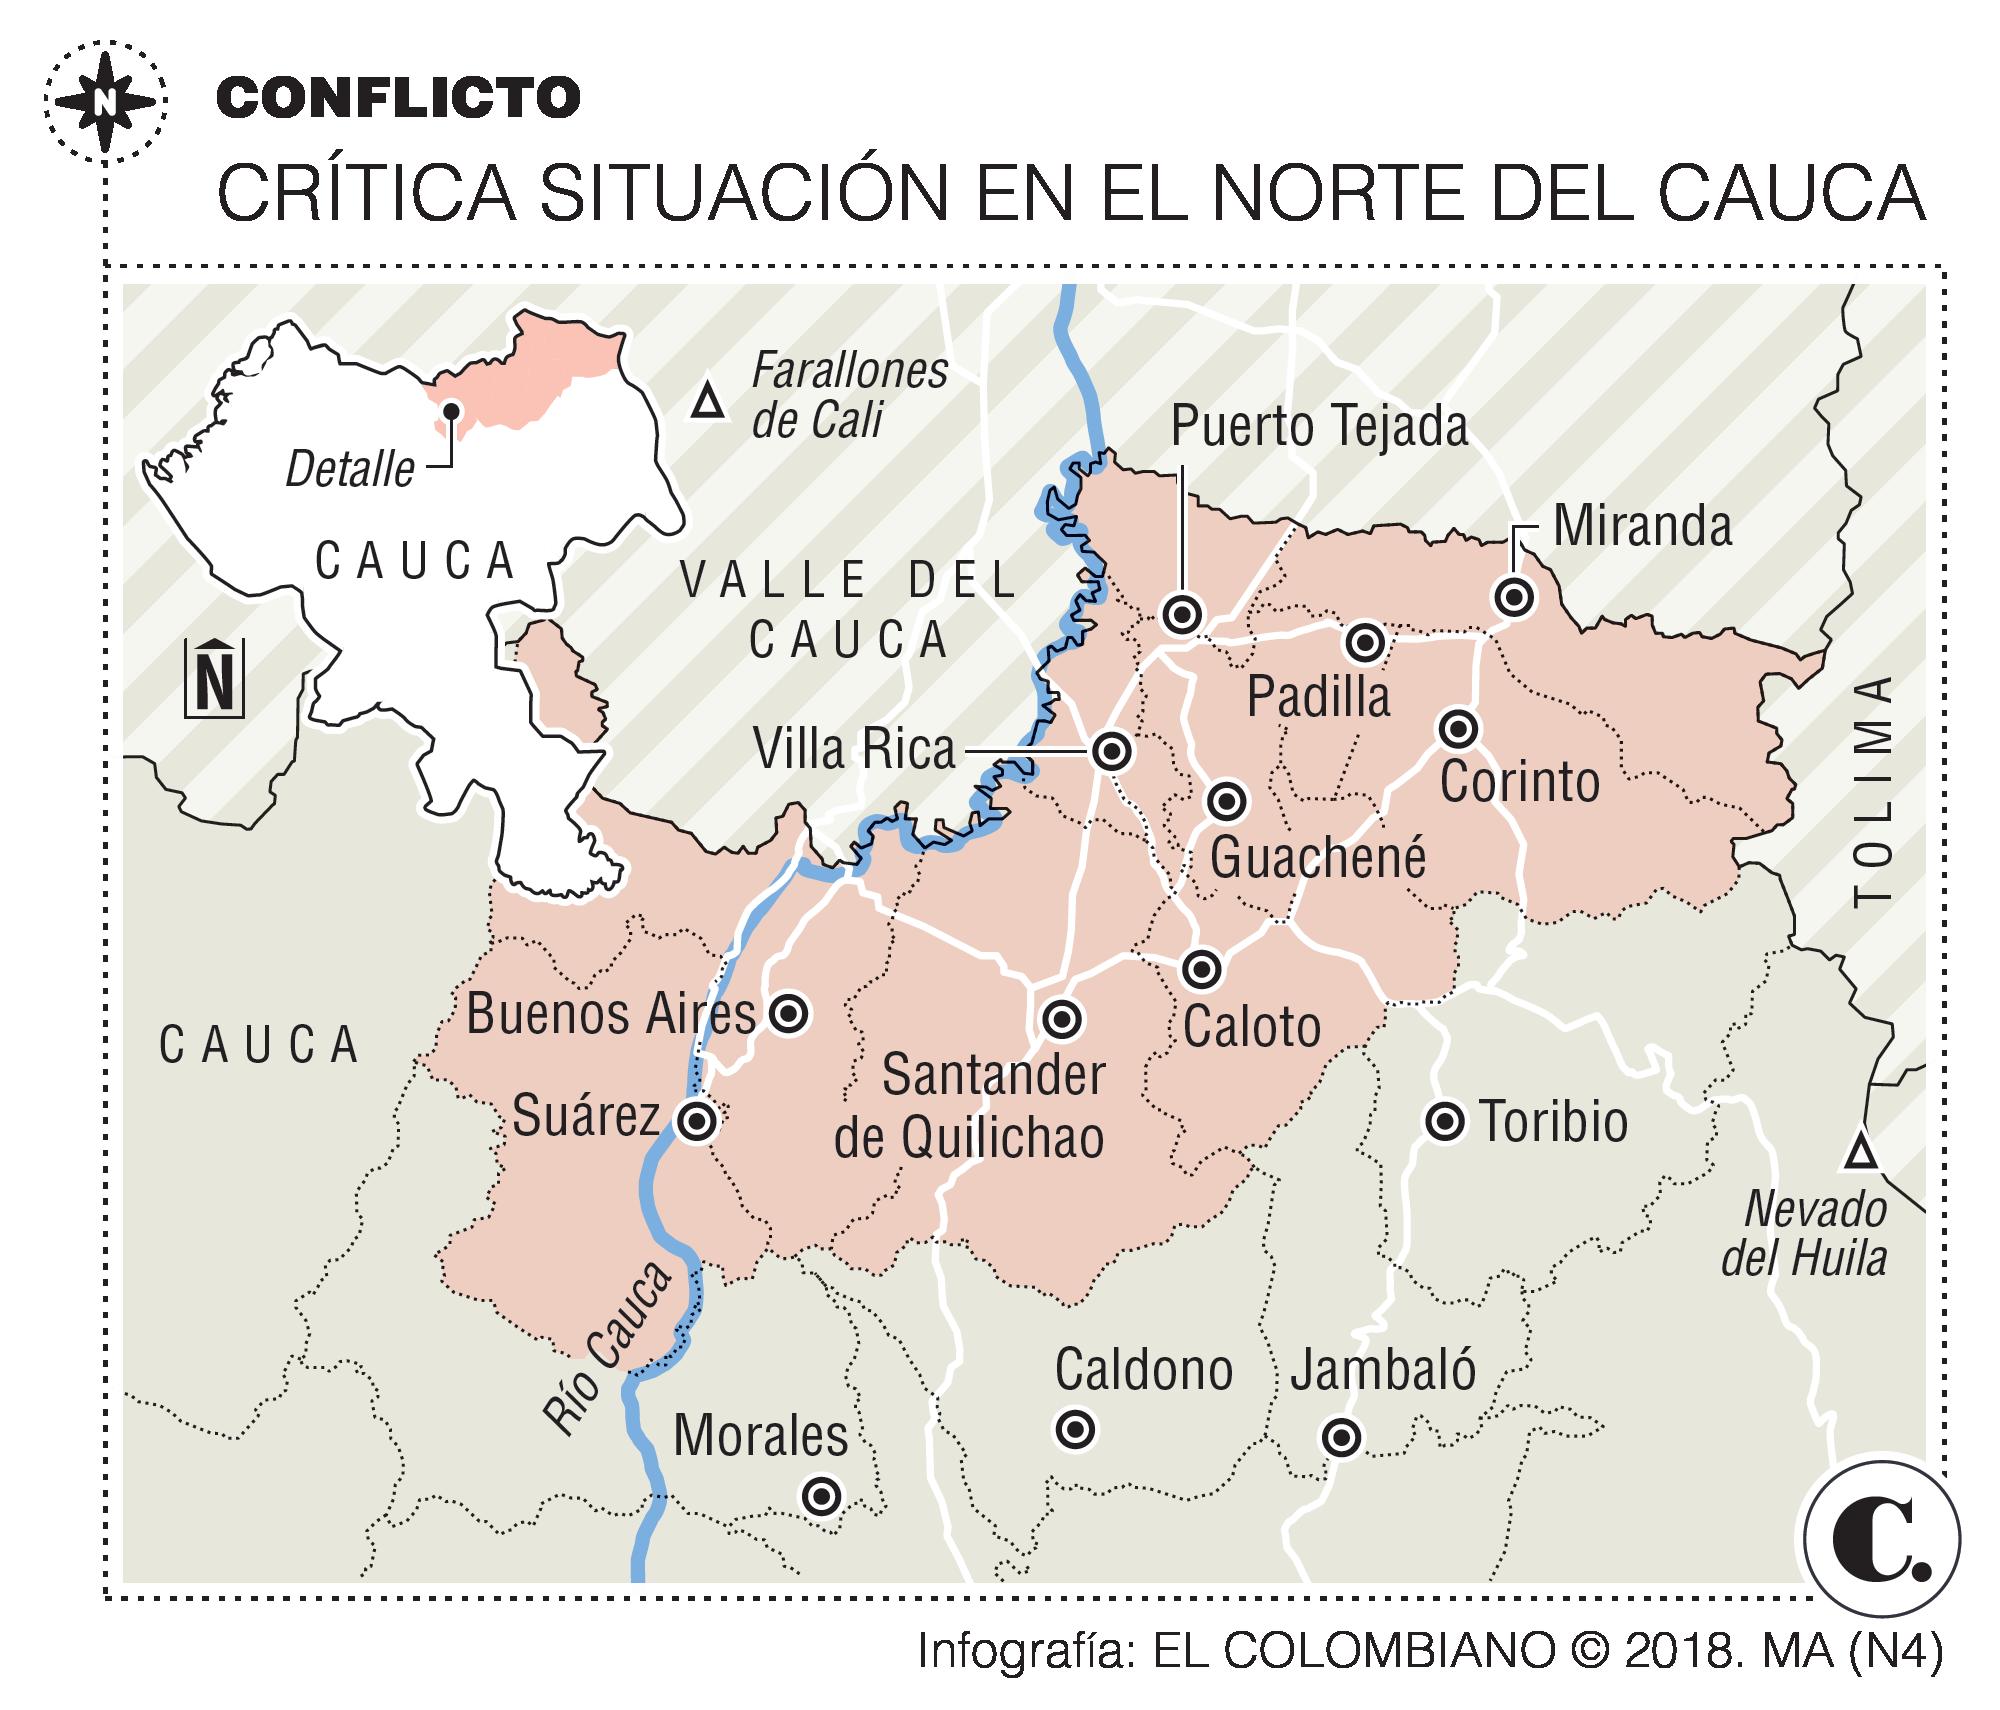 Indígenas resisten a la guerra en Cauca